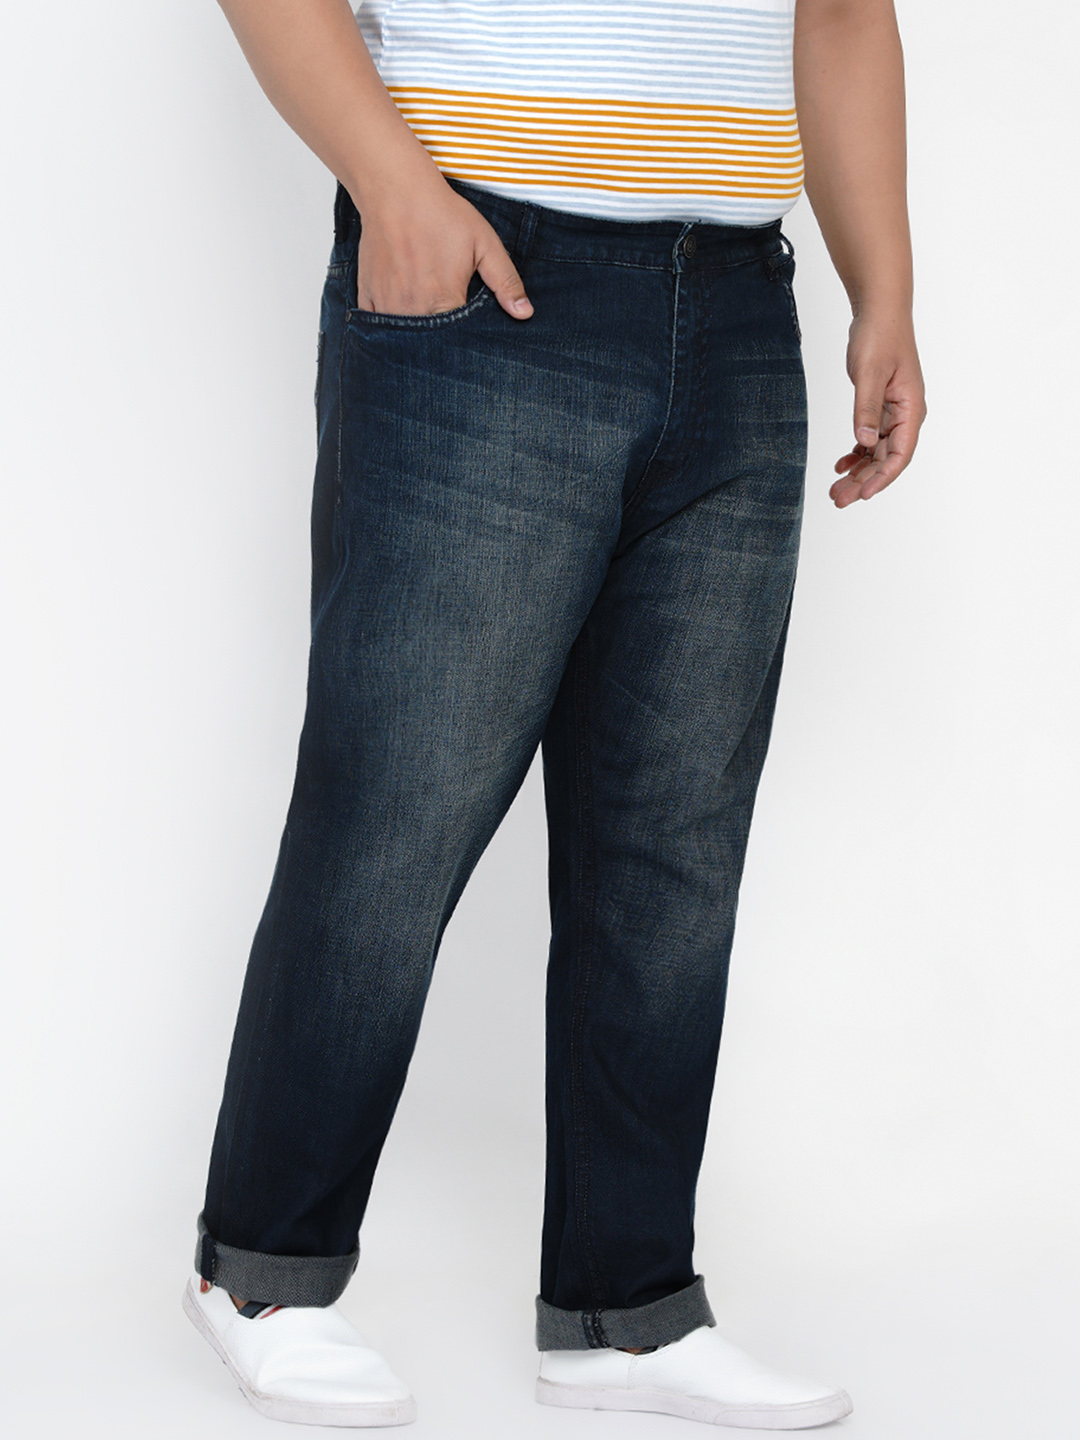 bottomwear/jeans/JPJ2560/jpj2560-3.jpg